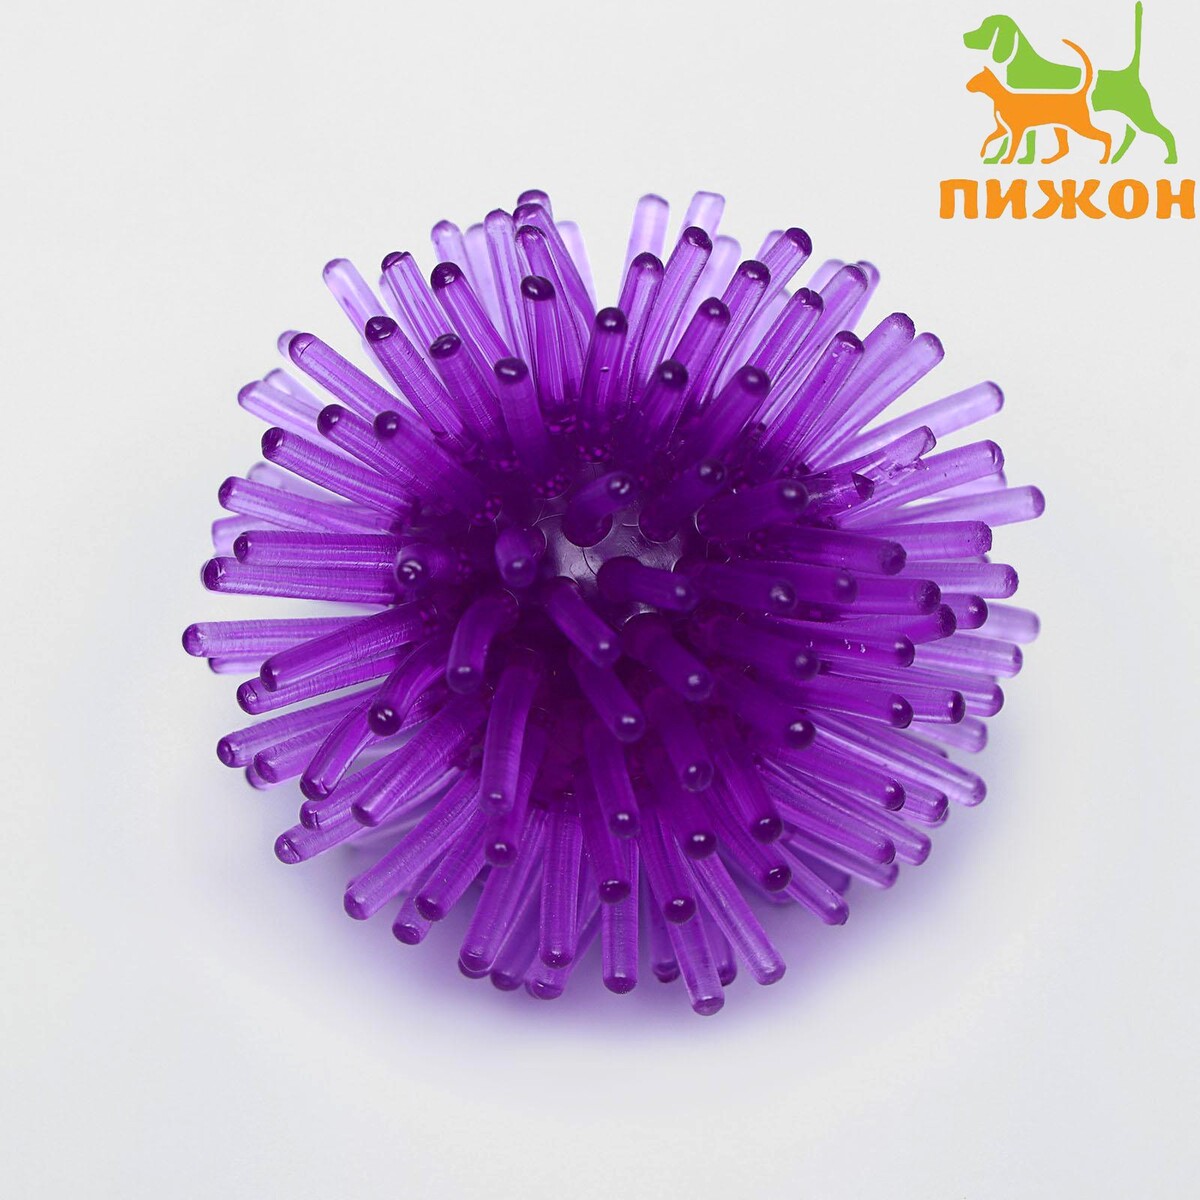 Шарик для кошек игольчатый, мягкий, 5 см, фиолетовый шарик для кошек с перьями